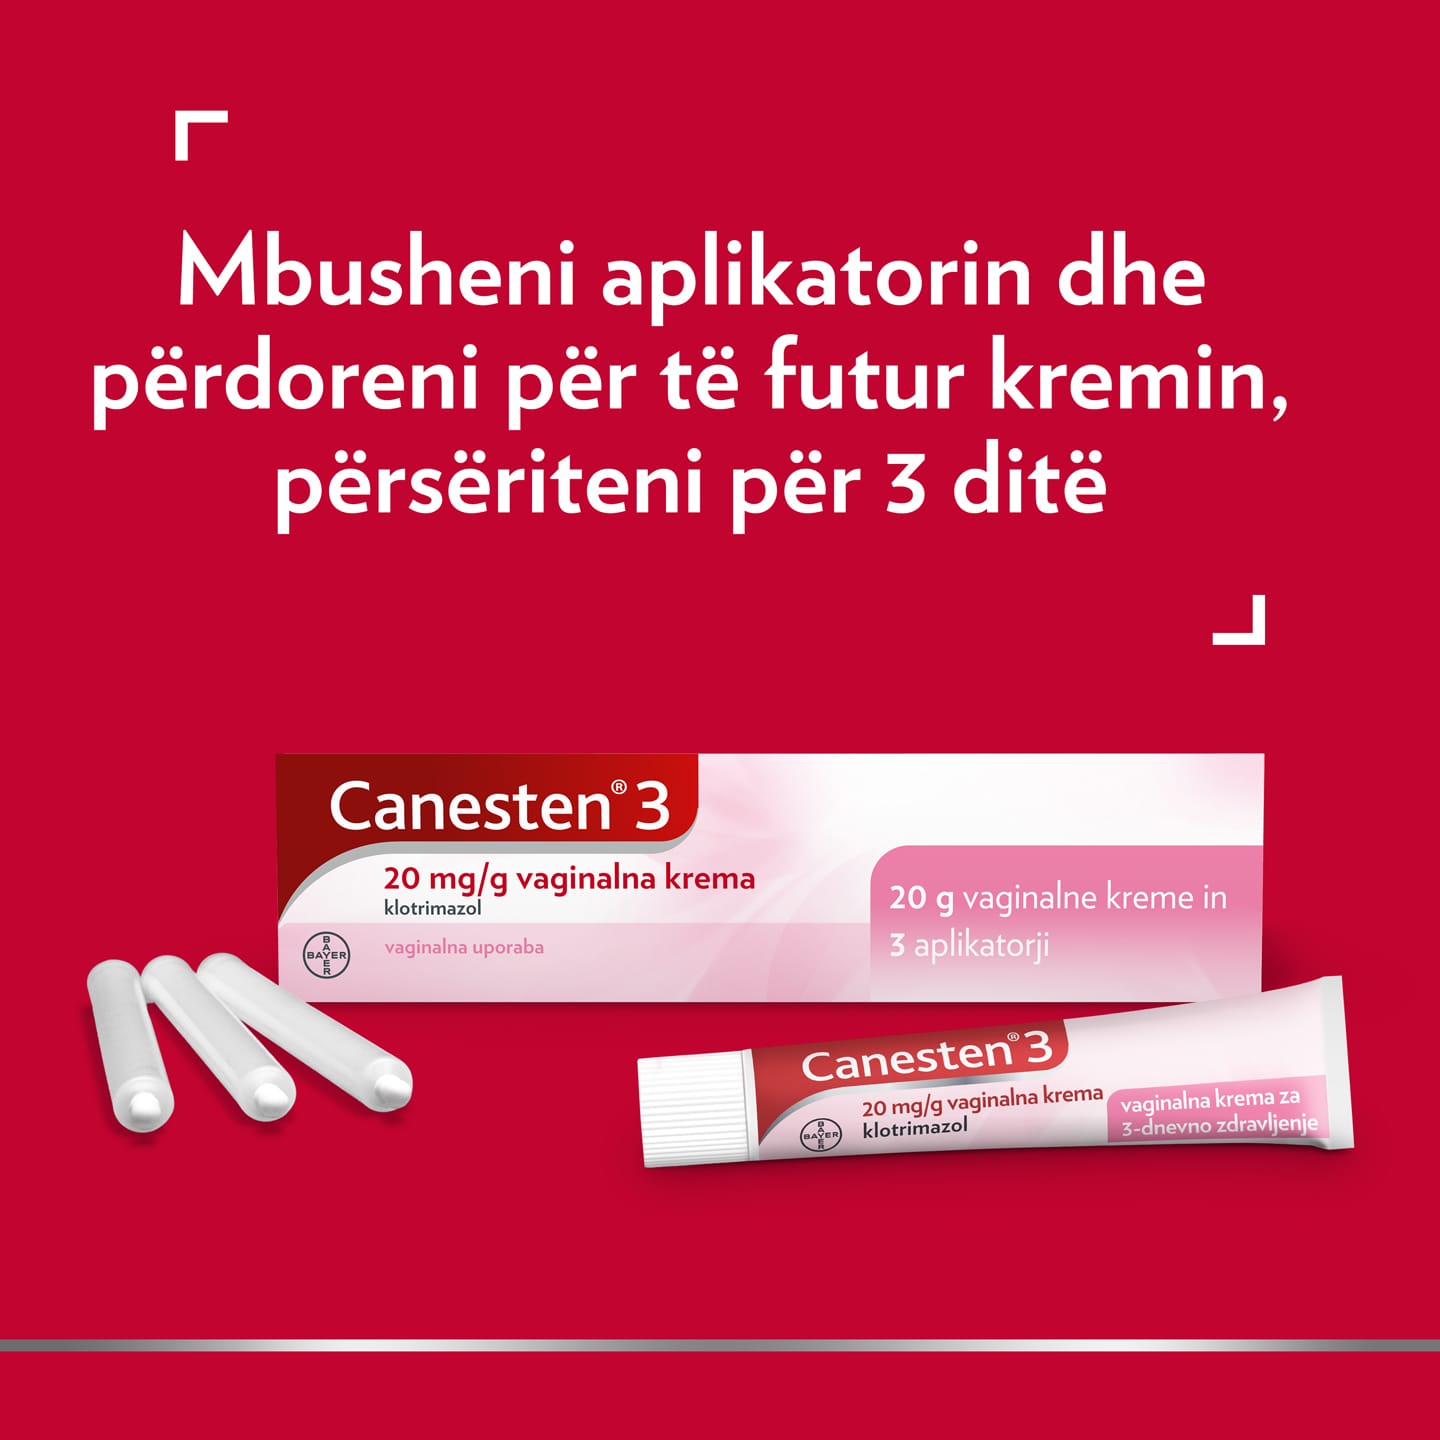 Canesten® 3 20 mg/g krem vaginal për mjekim të kandidozës, me titull në pjesën e sipërme: Mbushni aplikatorin dhe përdoreni për të vendosur kremin, përsëriteni për 3 ditë